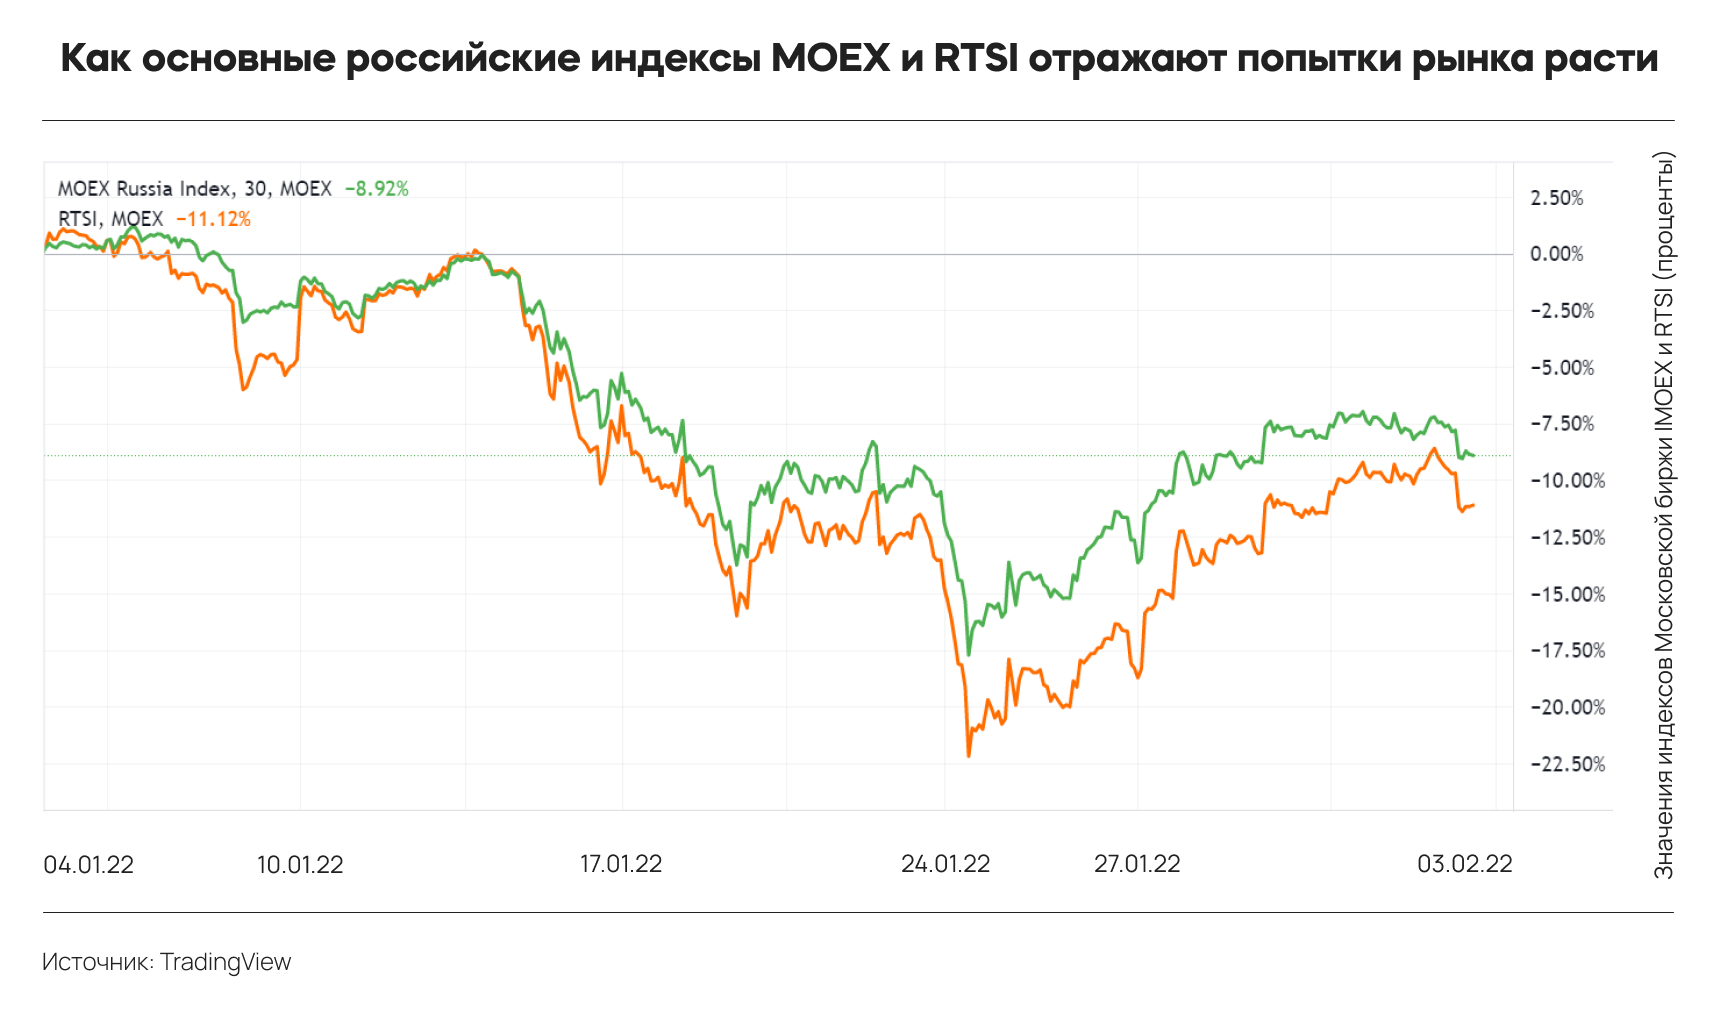 Топ-3 событий инвестиционного мира: доходы техногигантов впечатляют, российский рынок восстанавливается, нефть дорожает